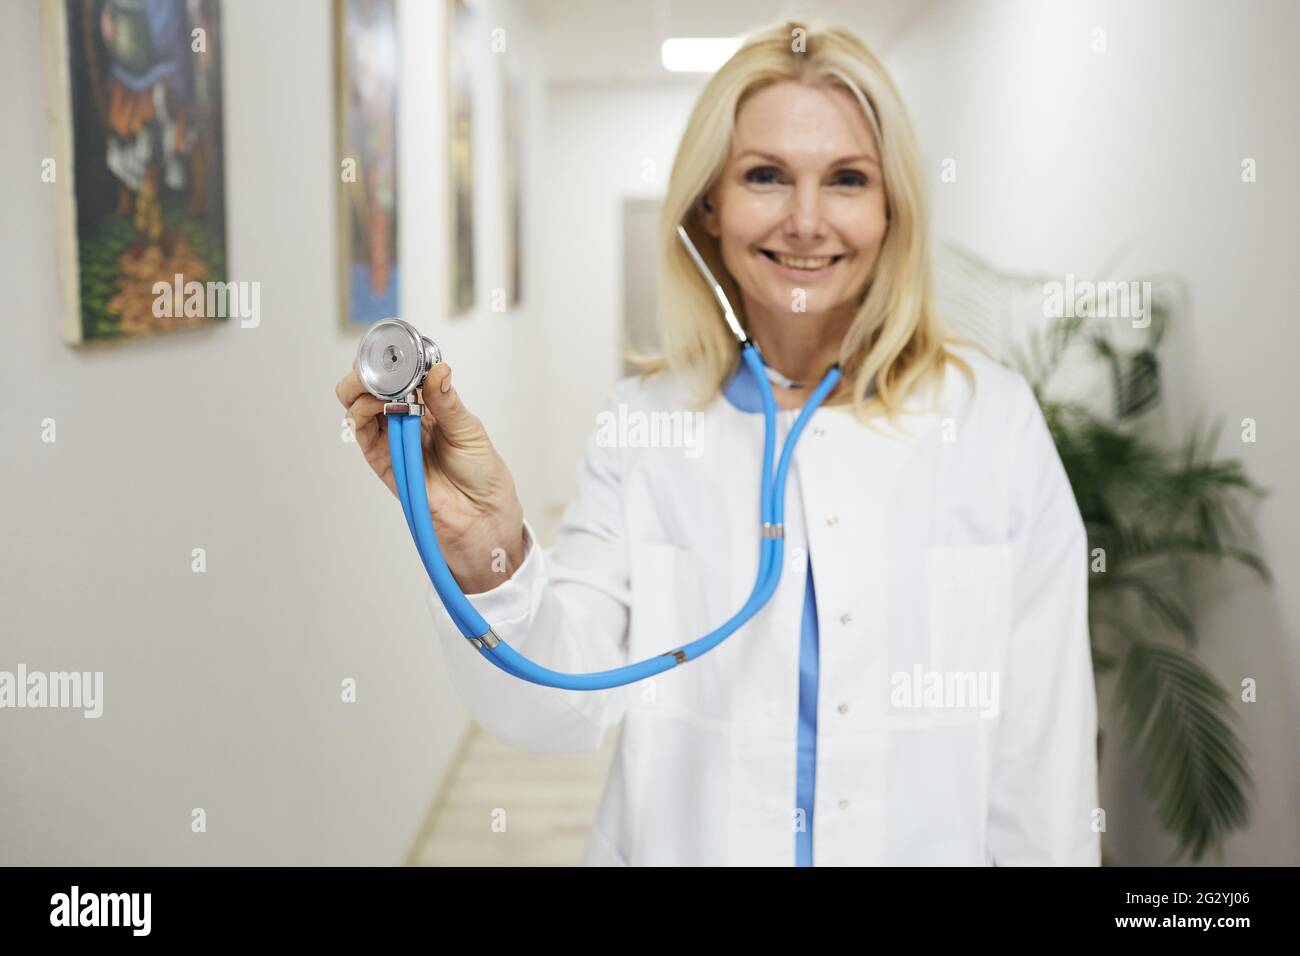 Arztberuf. Erfahrene Hausärztin mit medizinischem Mantel mit Stethoskop in der Hand, stehend in einer medizinischen Klinik, Porträt Stockfoto